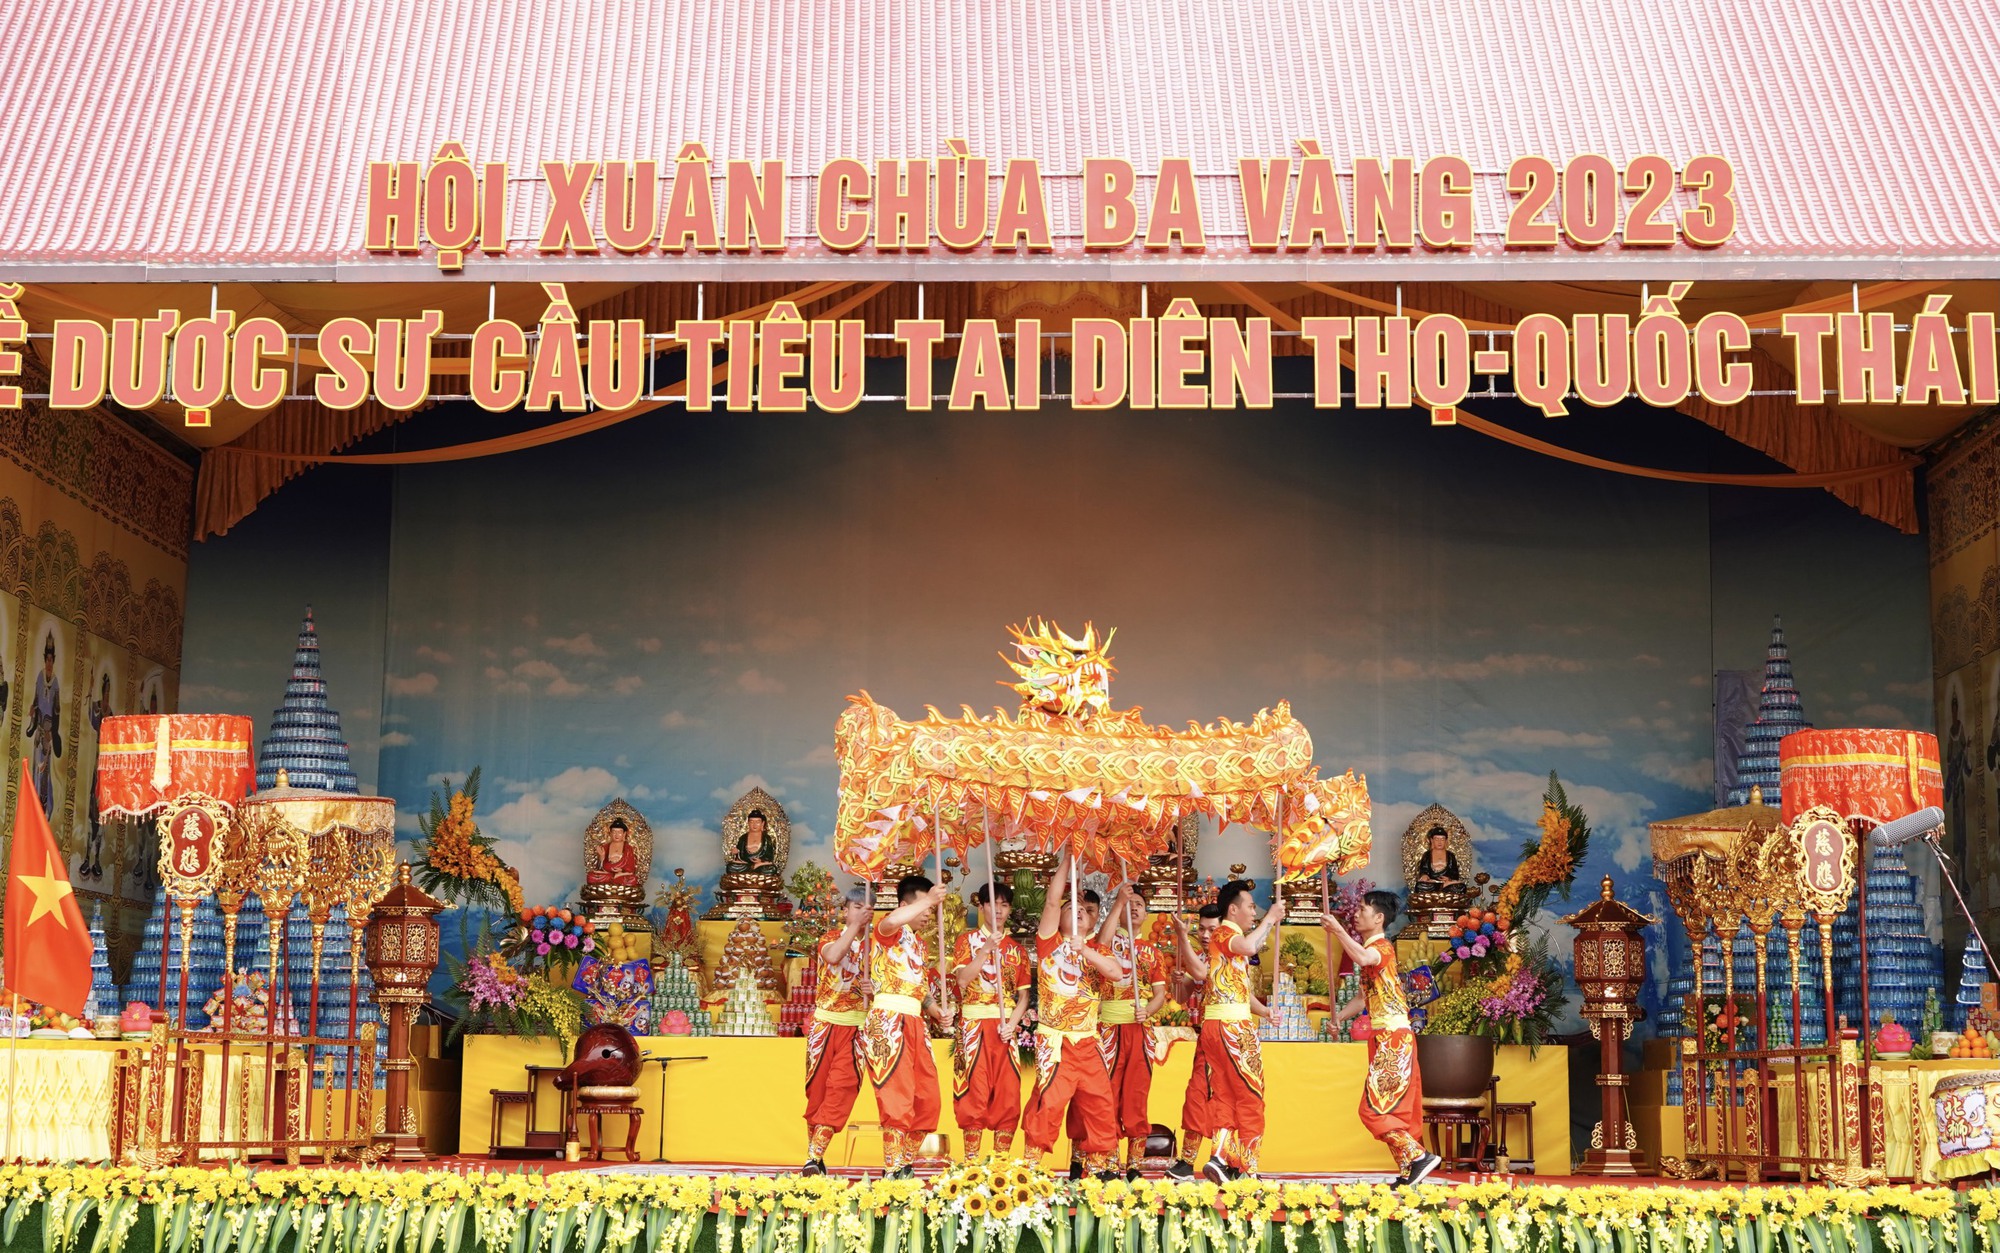 Hội xuân chùa Ba Vàng là một trong những sự kiện văn hóa quy mô lớn tại Quảng Ninh